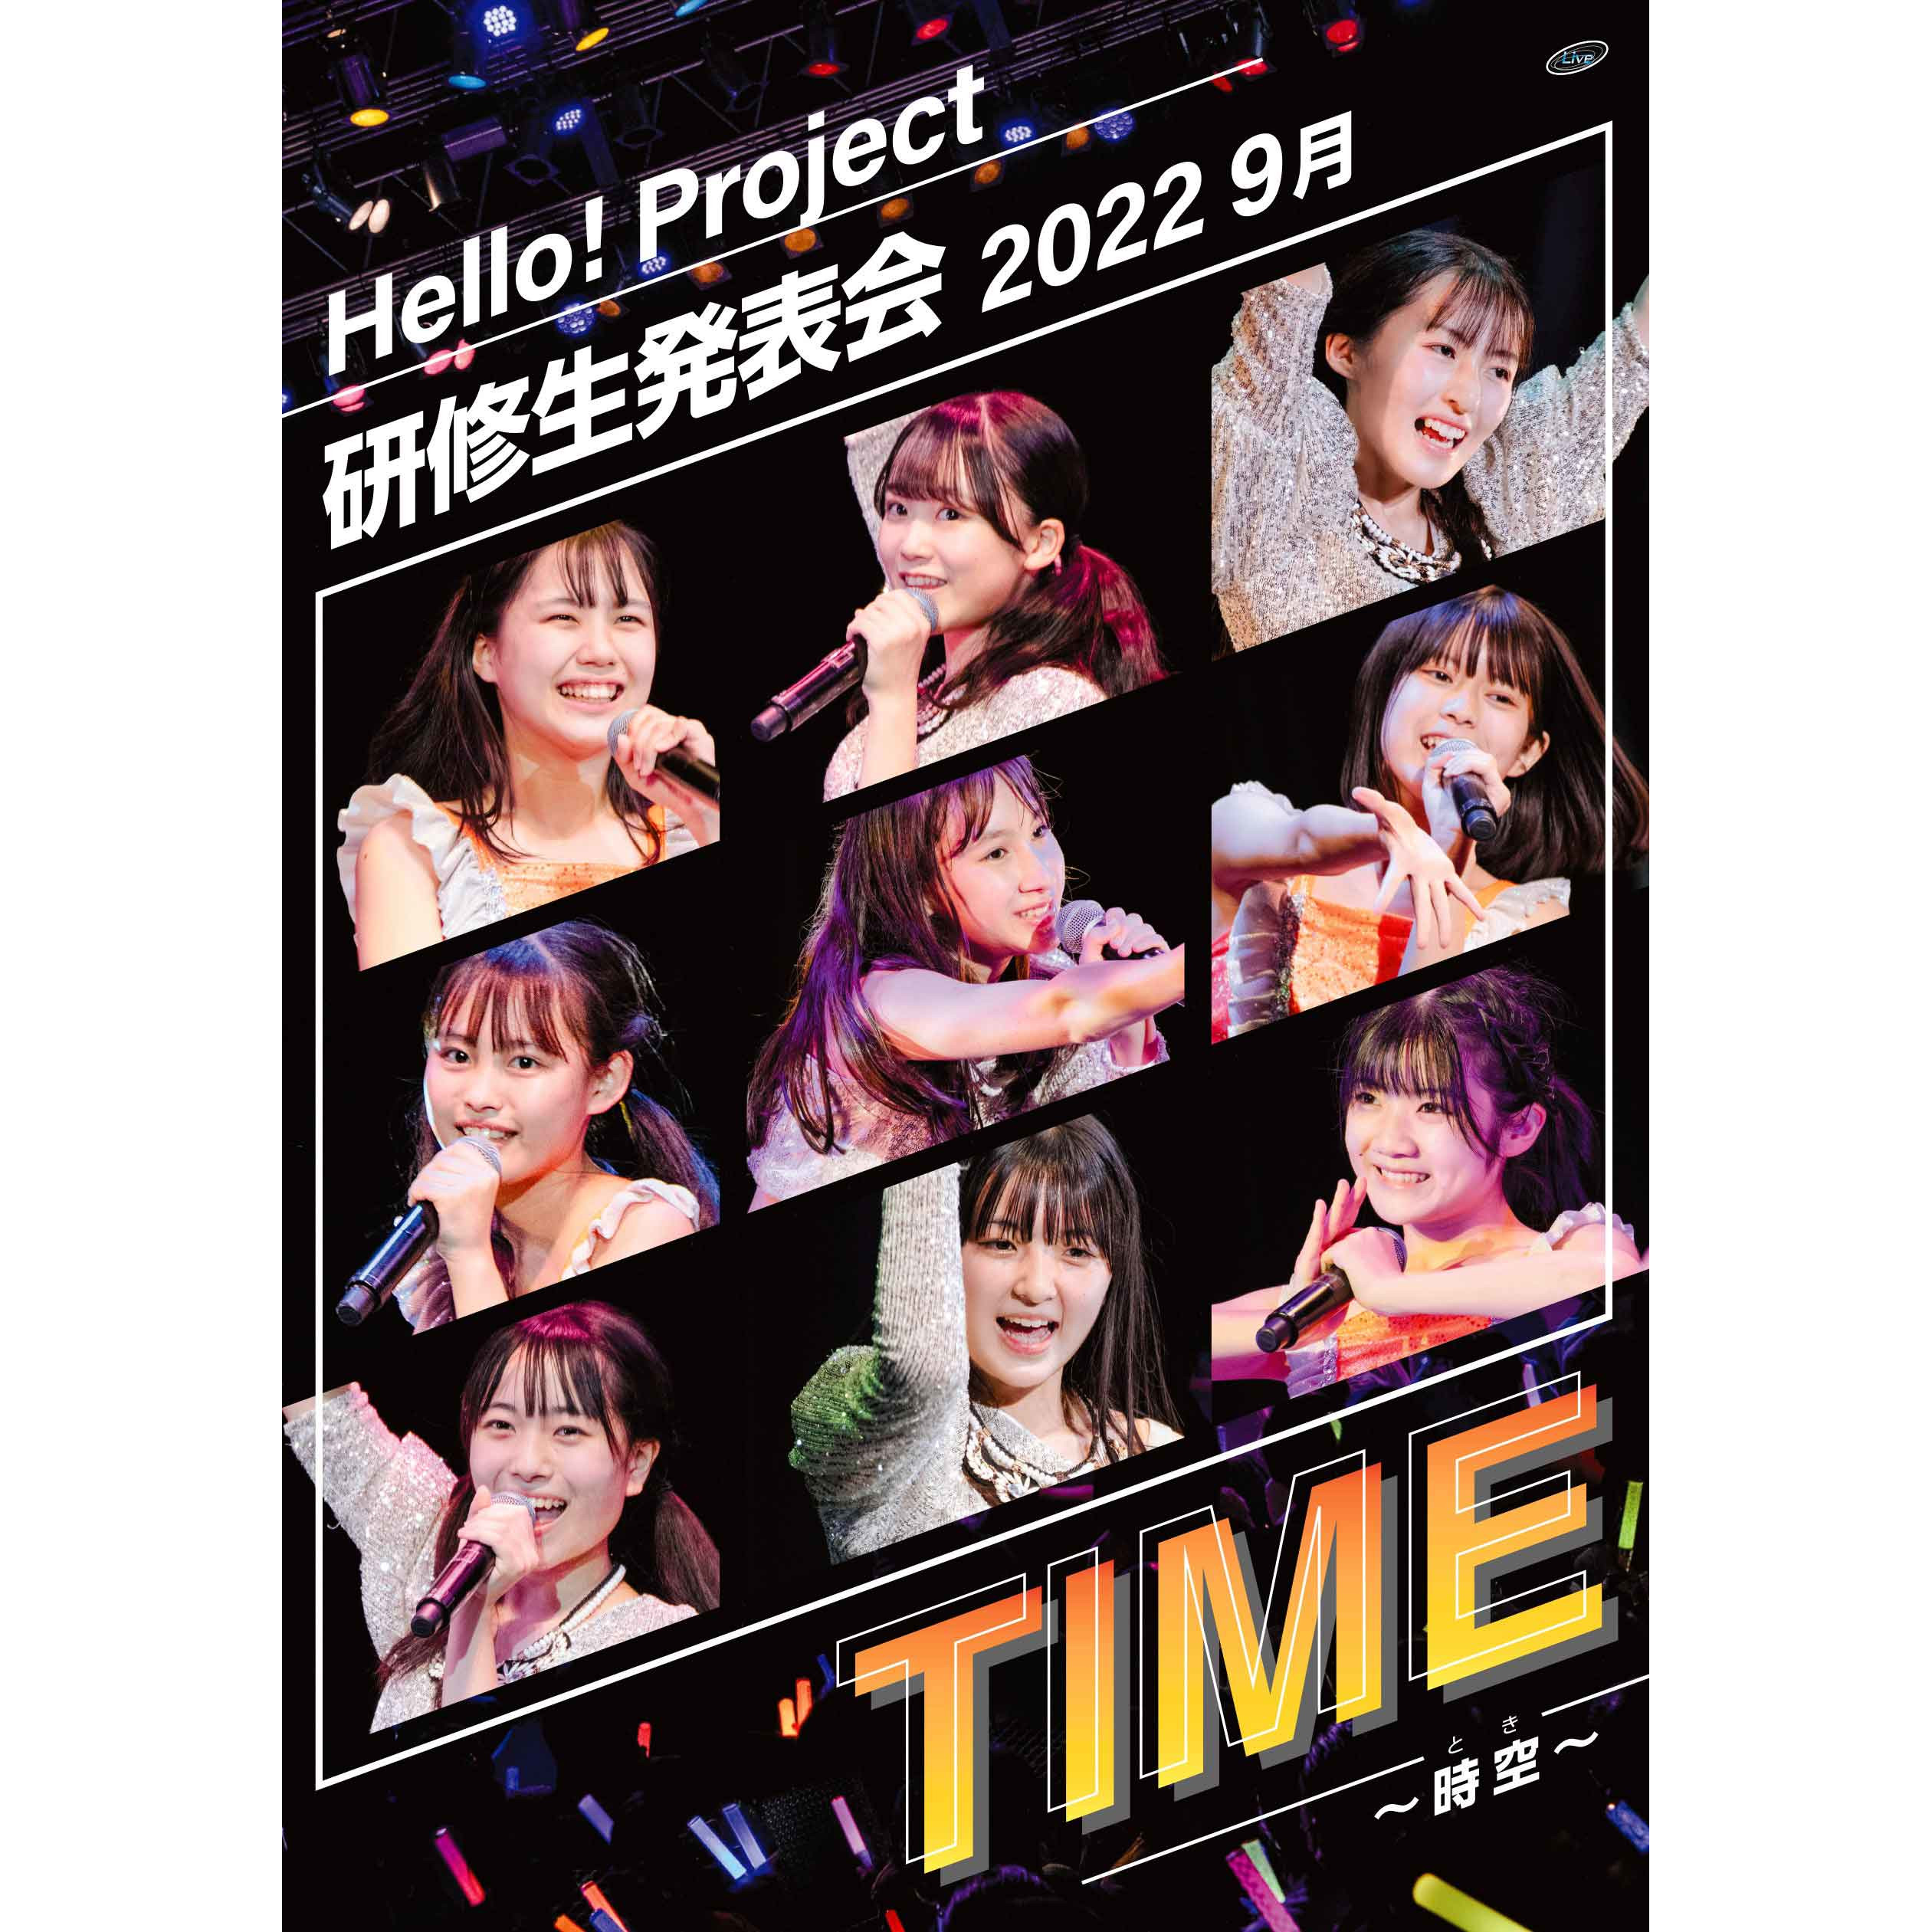 ハロプロ研修生 DVD「Hello! Project 研修生発表会 2022 9月 TIME～時空～」